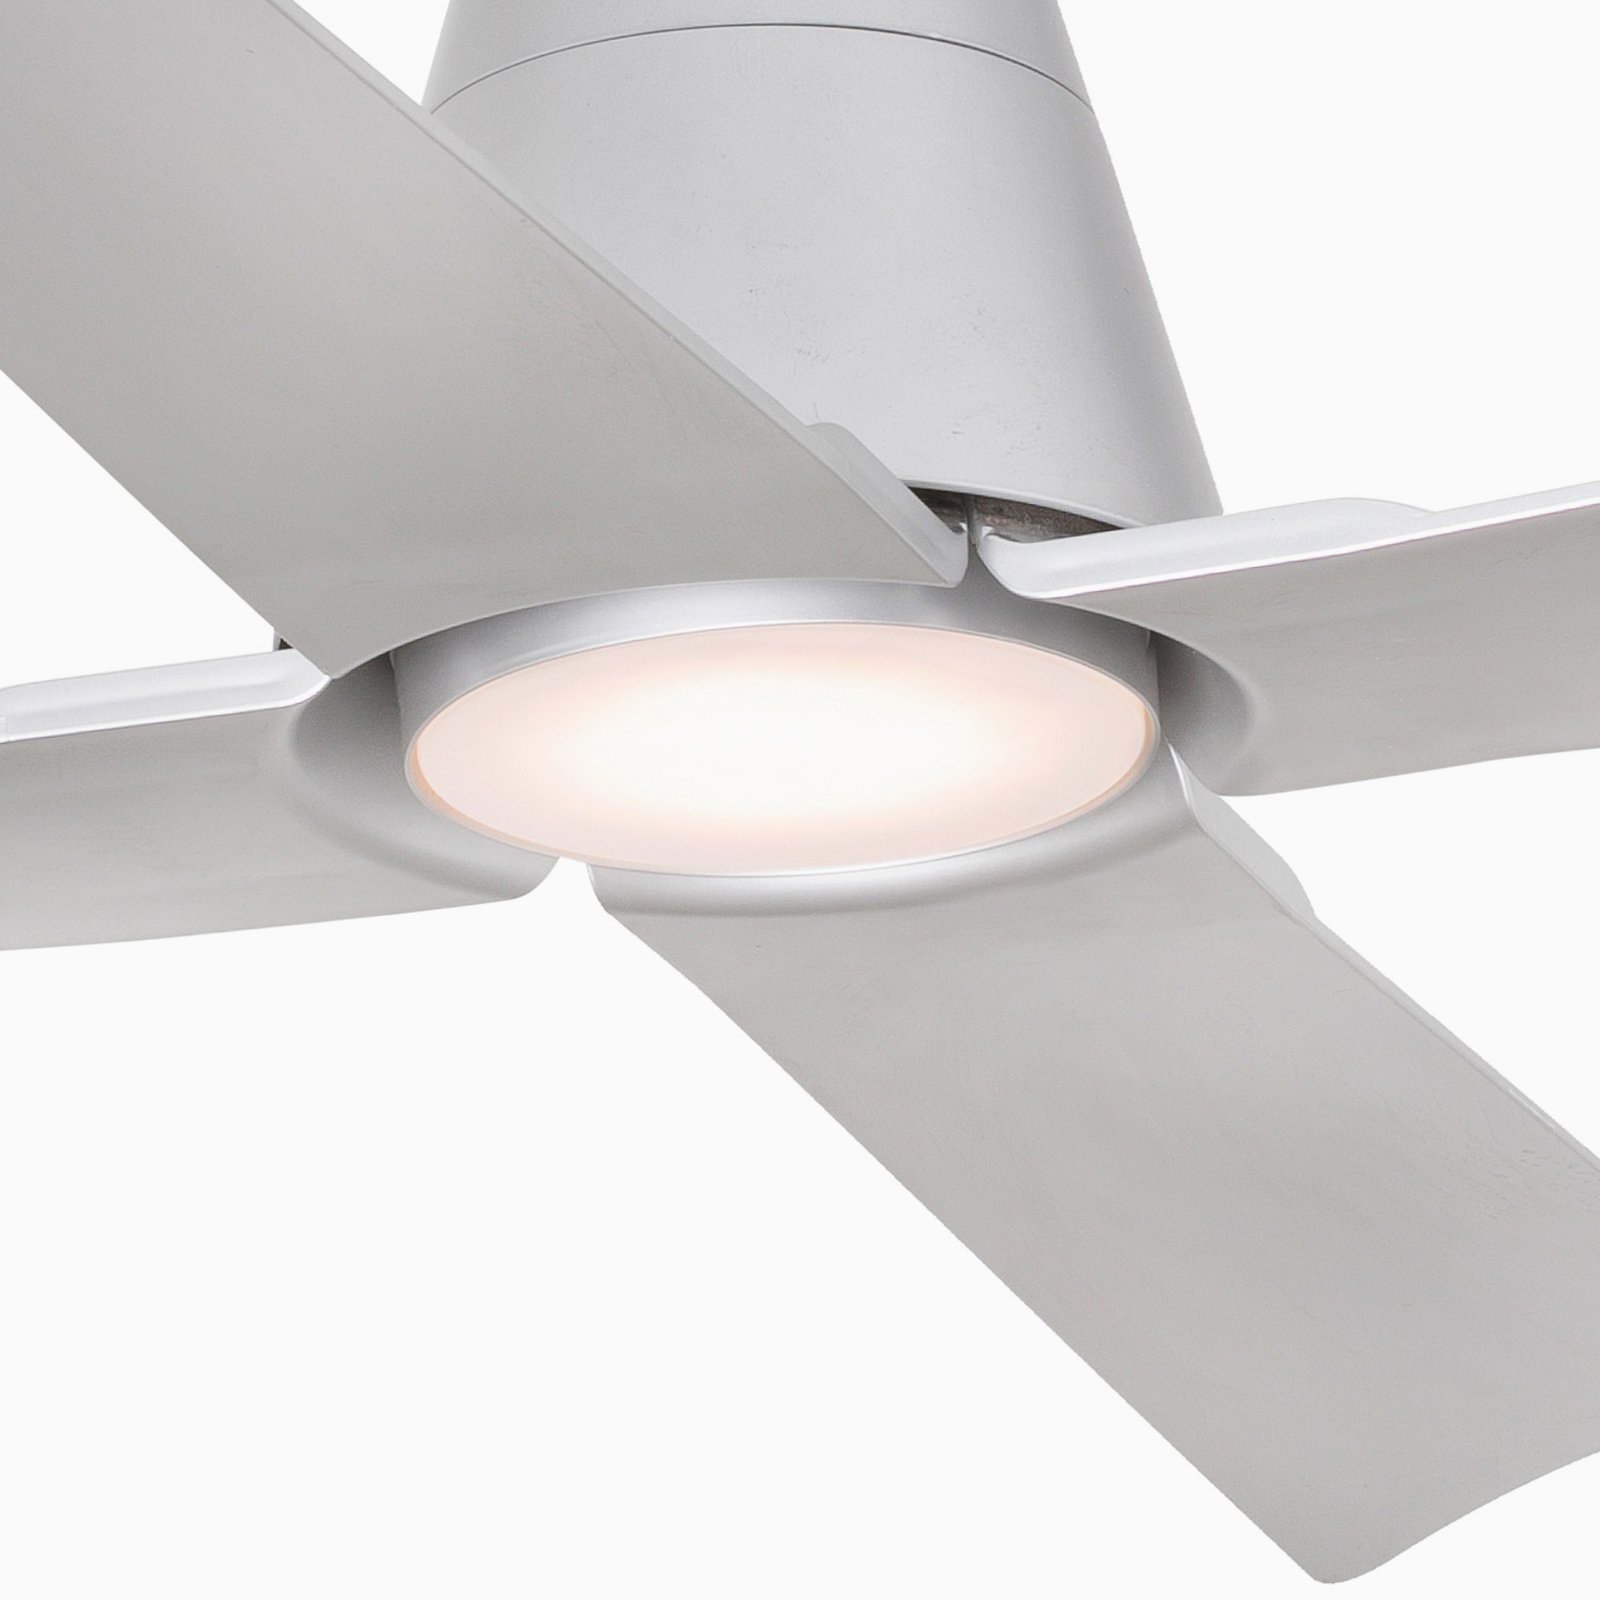 Typhoon L ceiling fan LED light IP44 grey